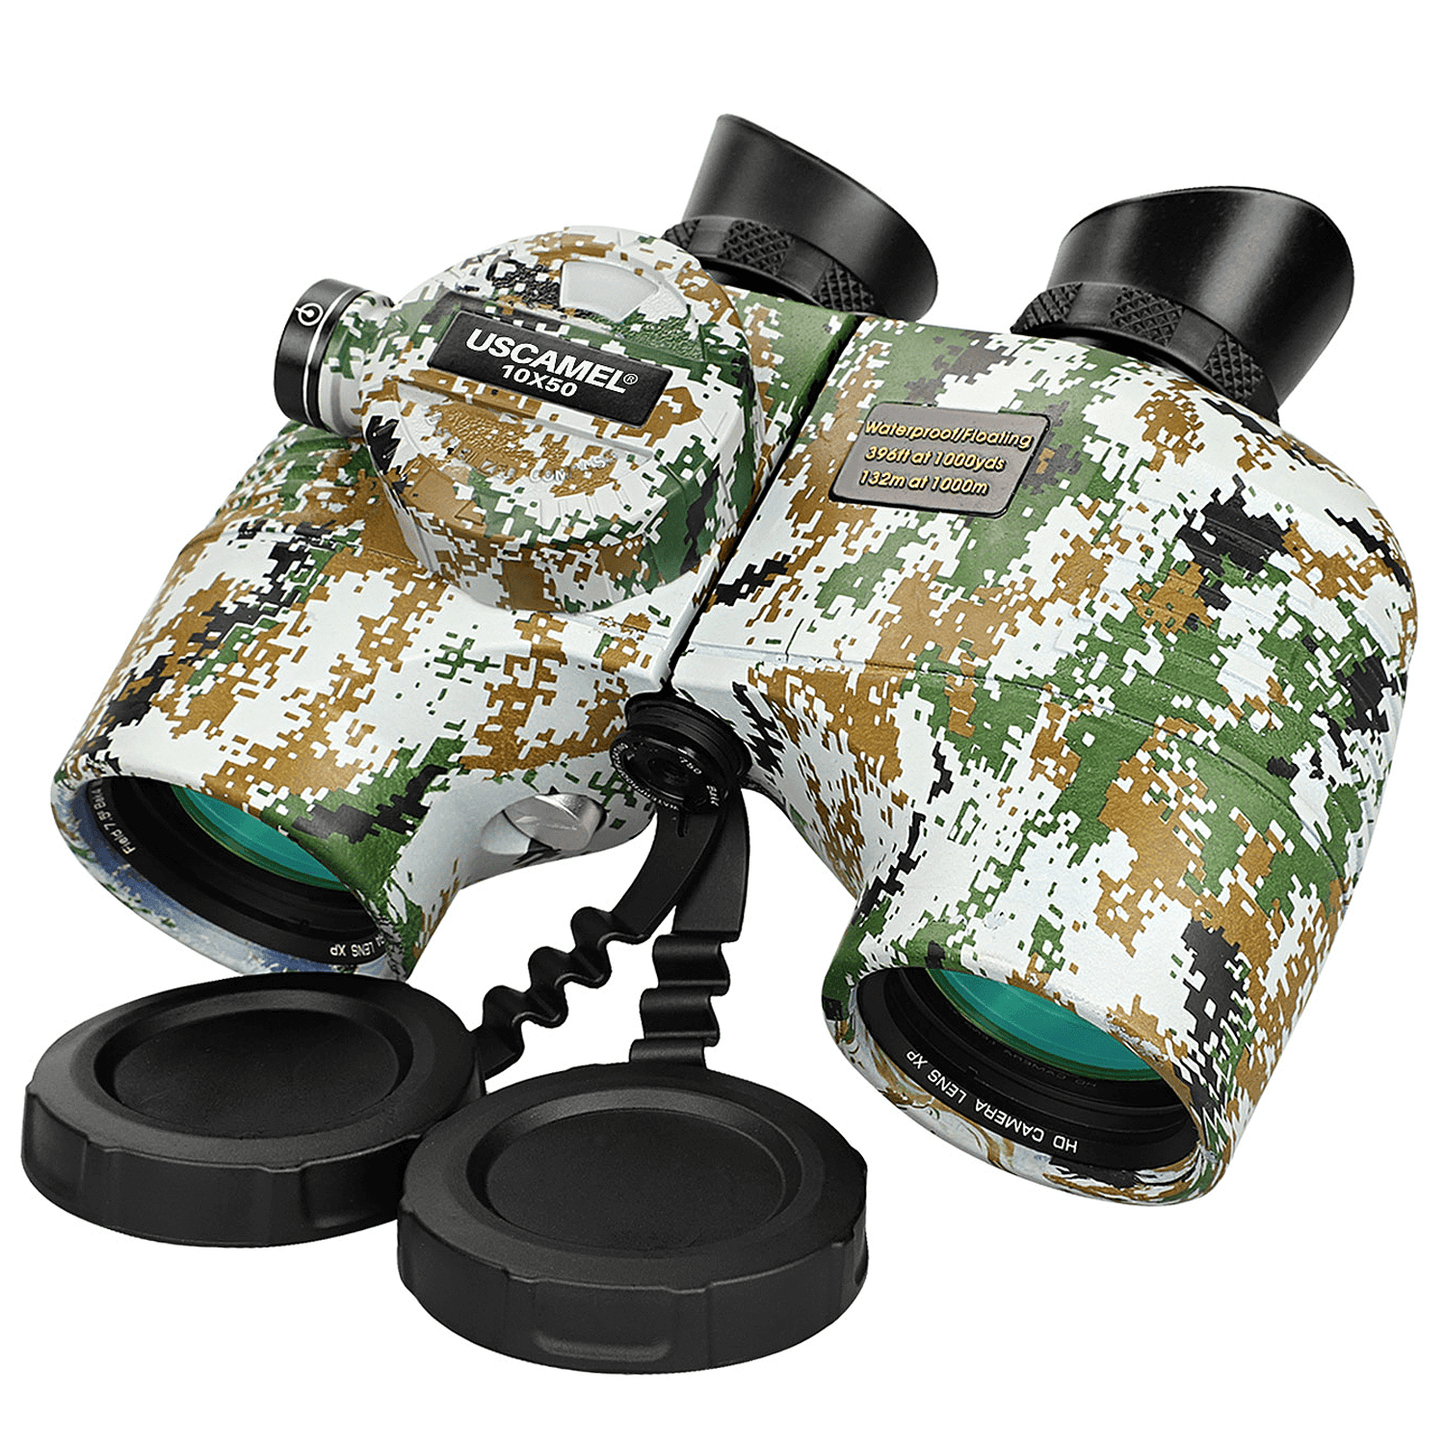 Military Binoculars